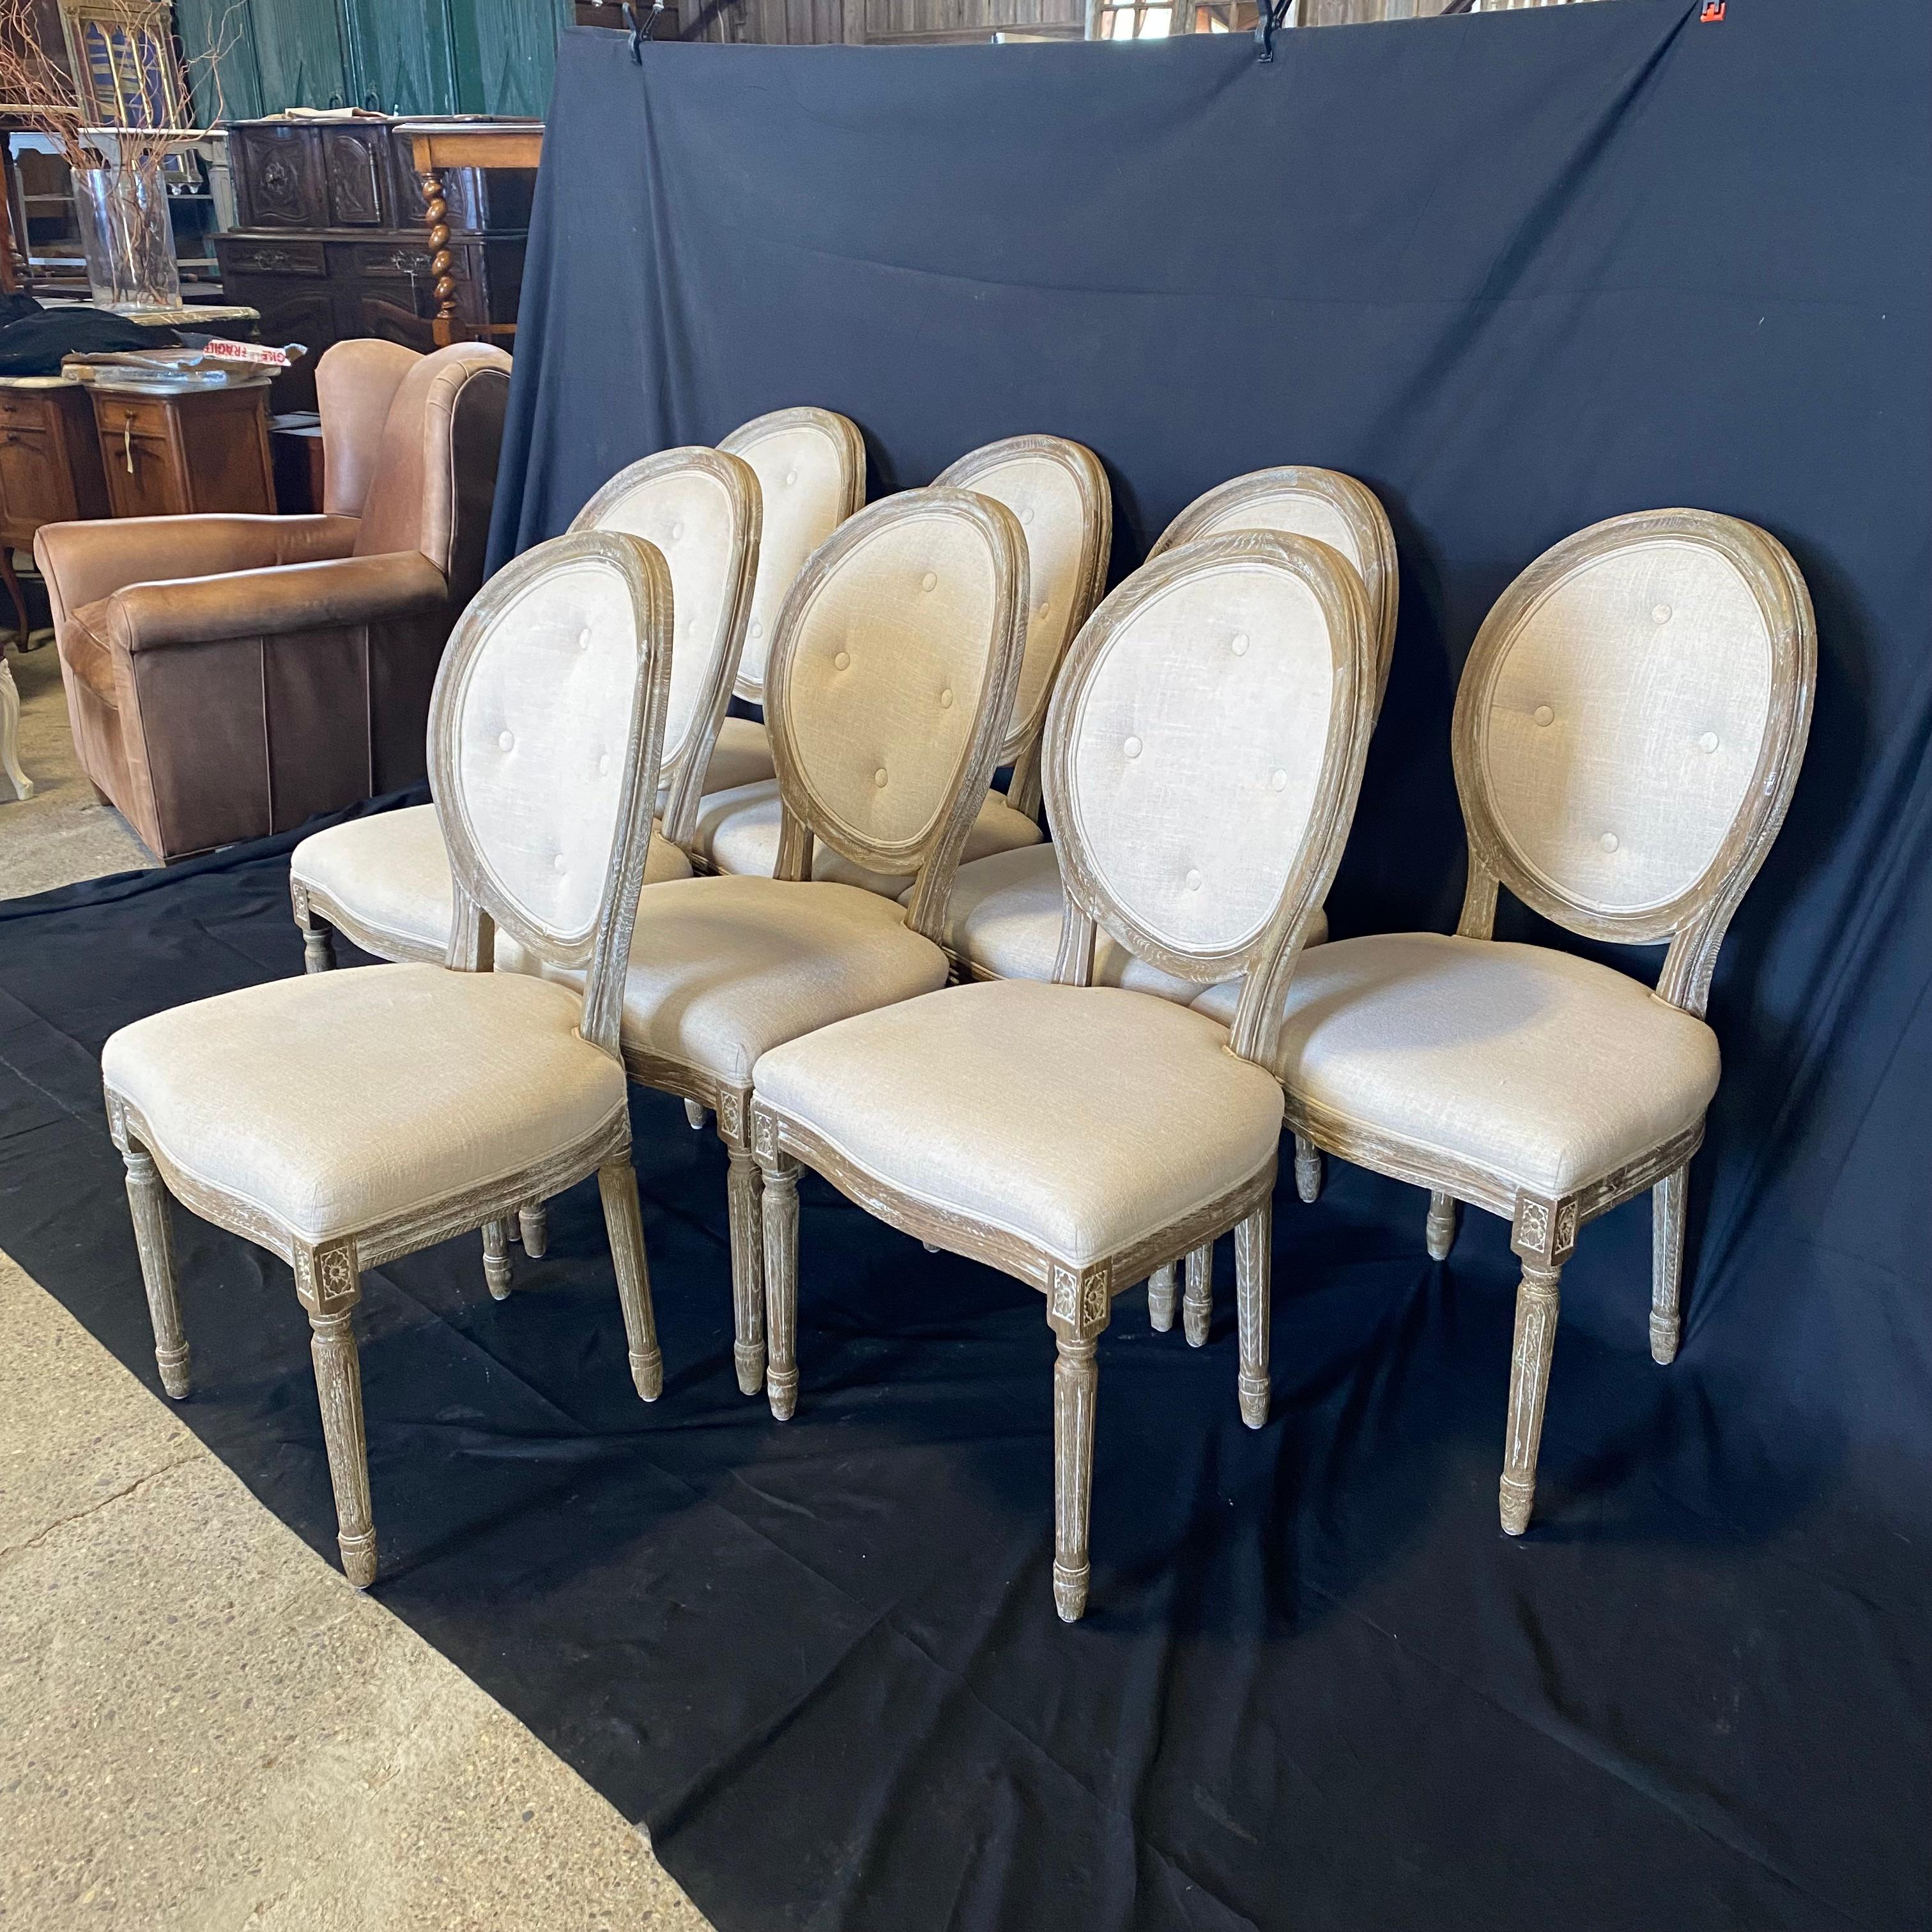 Wirklich schönes Set von acht Esszimmerstühlen mit getufteter Rückenlehne und cerused oak im klassischen Stil von Louis XVI.  In hervorragendem Zustand und bereit, Ihrem Esszimmer Eleganz zu verleihen!
#5317